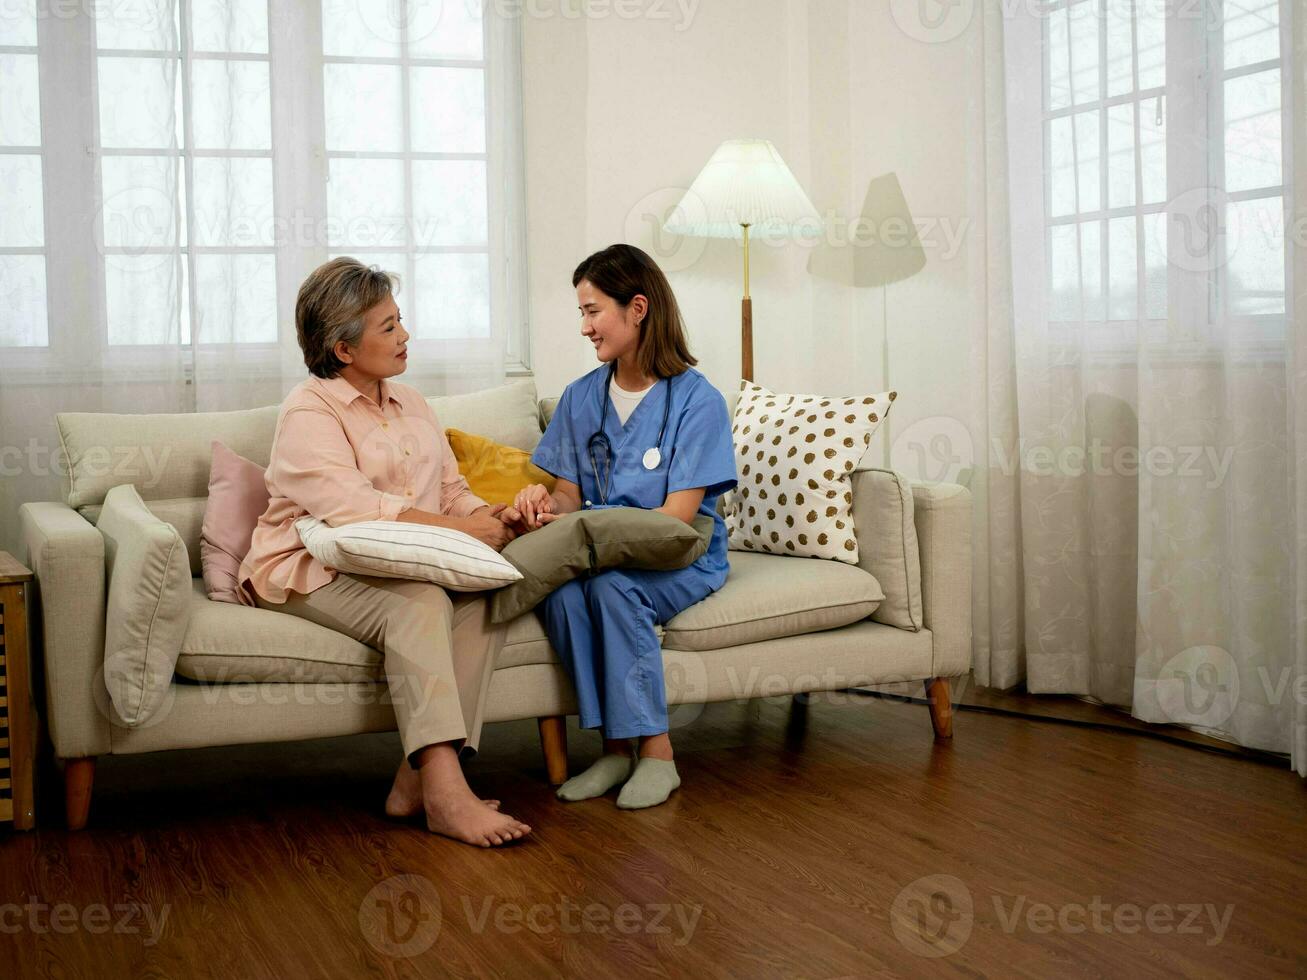 médico enfermeira funcionários assistência fêmea mulher senhora menina pessoa pessoas humano conversa falar discussão Visita consultar paciente idosos mulher médico tratamento comunicação cuidador ouvindo aposentadoria foto